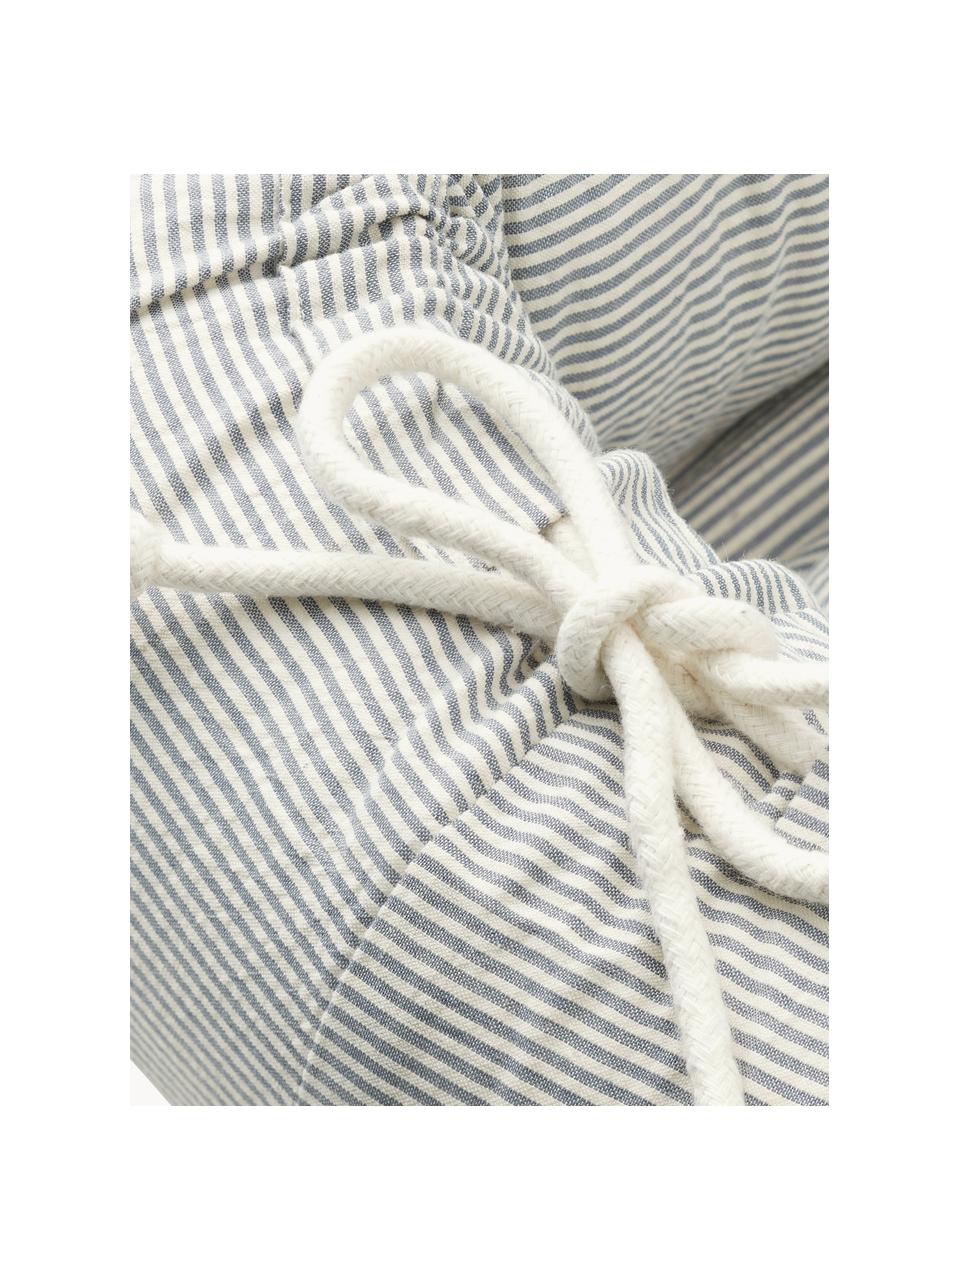 Kokon niemowlęcy z bawełny Gro, Tapicerka: 100% bawełna, Szary, biały, w paski, S 45 x D 84 cm